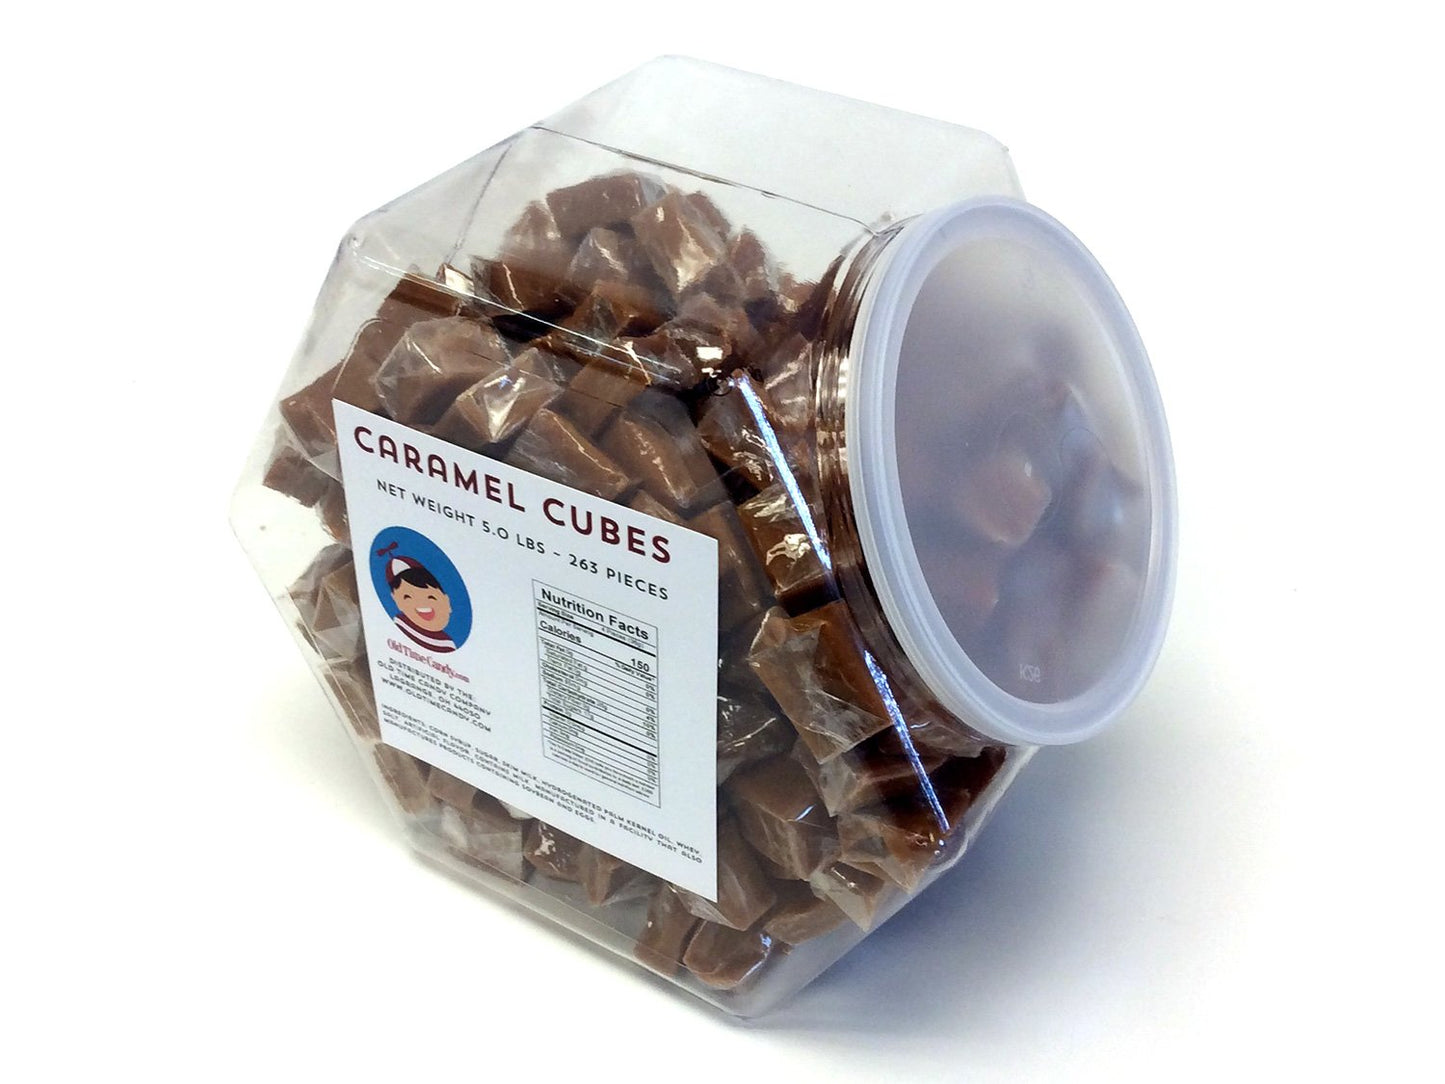 Caramel Cubes - 5 lb Plastic Tub